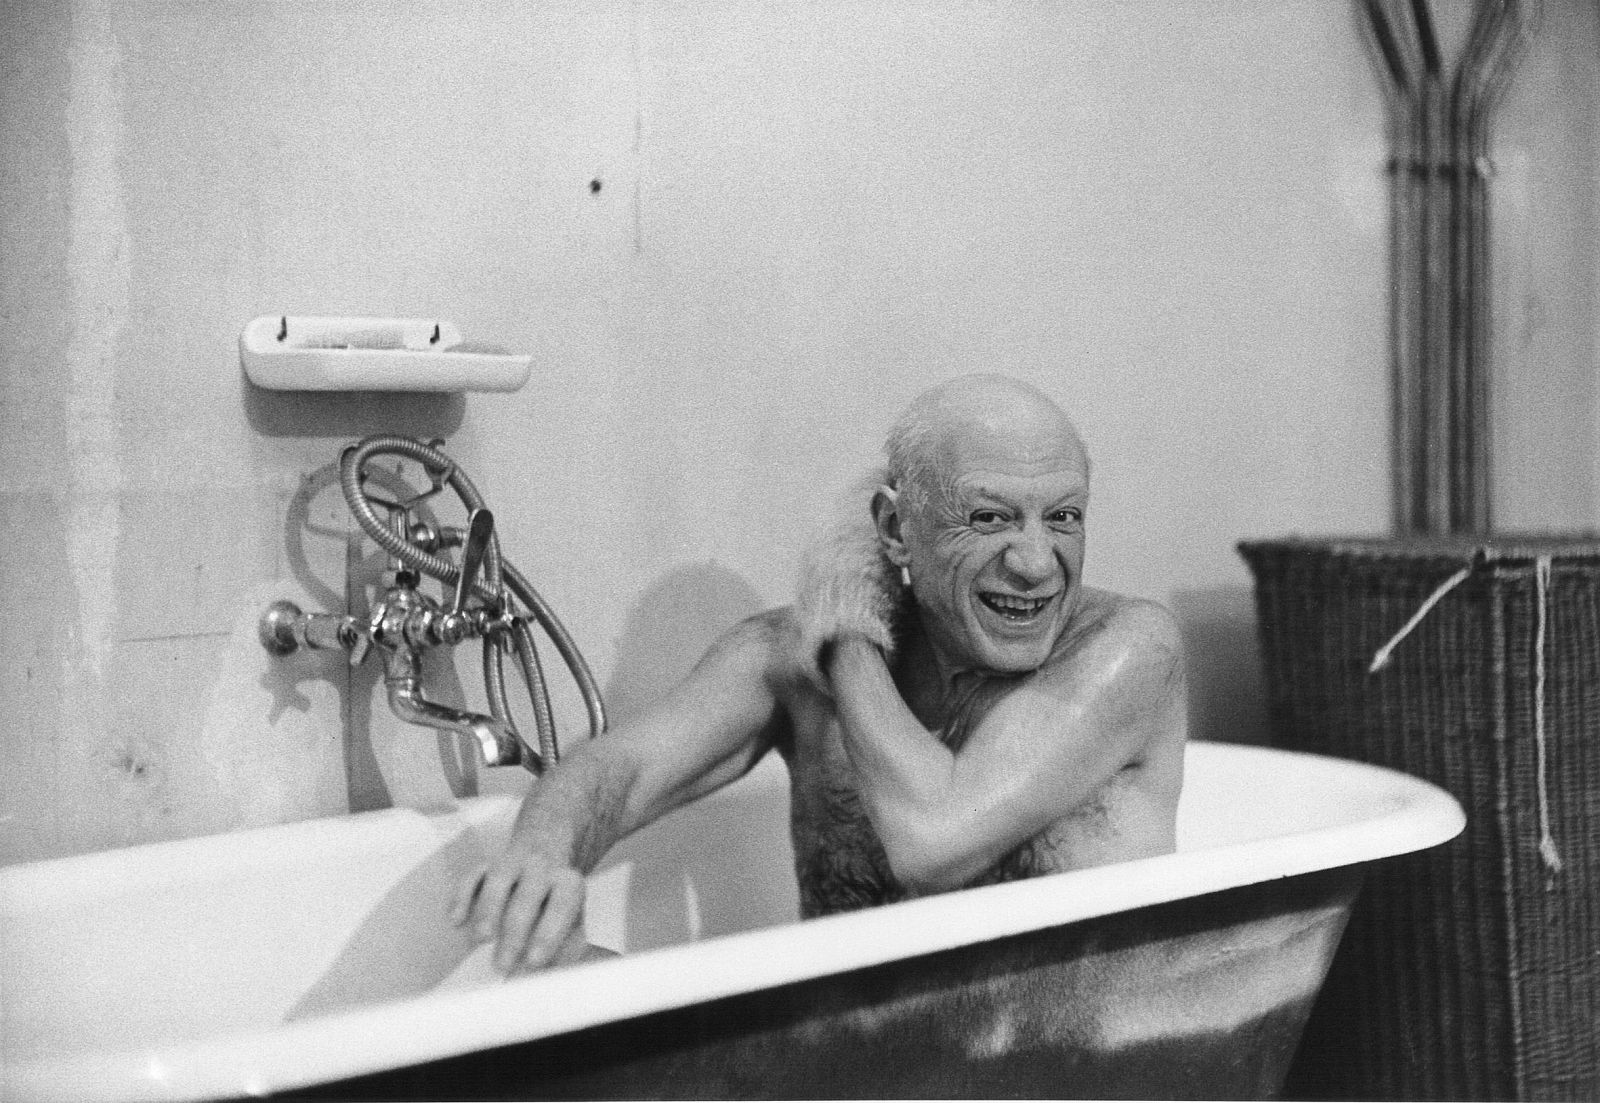 La imagen del primer encuentro de David Douglas Duncan con Picasso, 'Pablo Picasso en la bañera', tomada el 8 febrero 1956, que puede verse en la exposición del MPM.